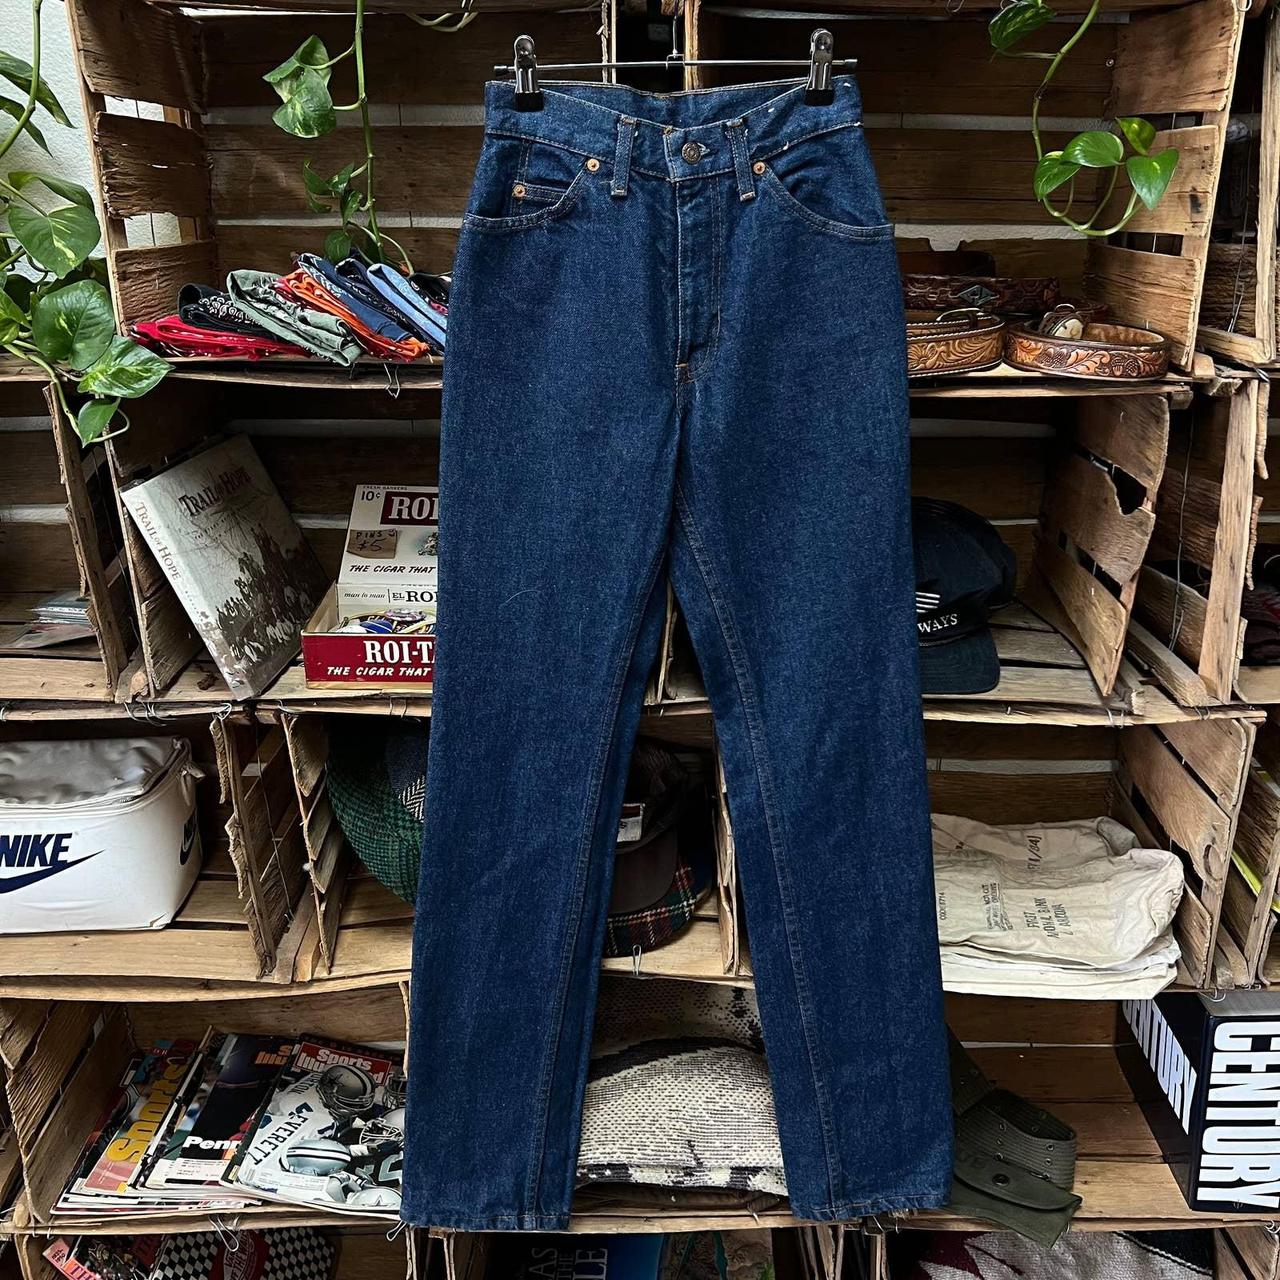 Vintage 80s Levi’s 26068 High Waisted Jeans,... - Depop